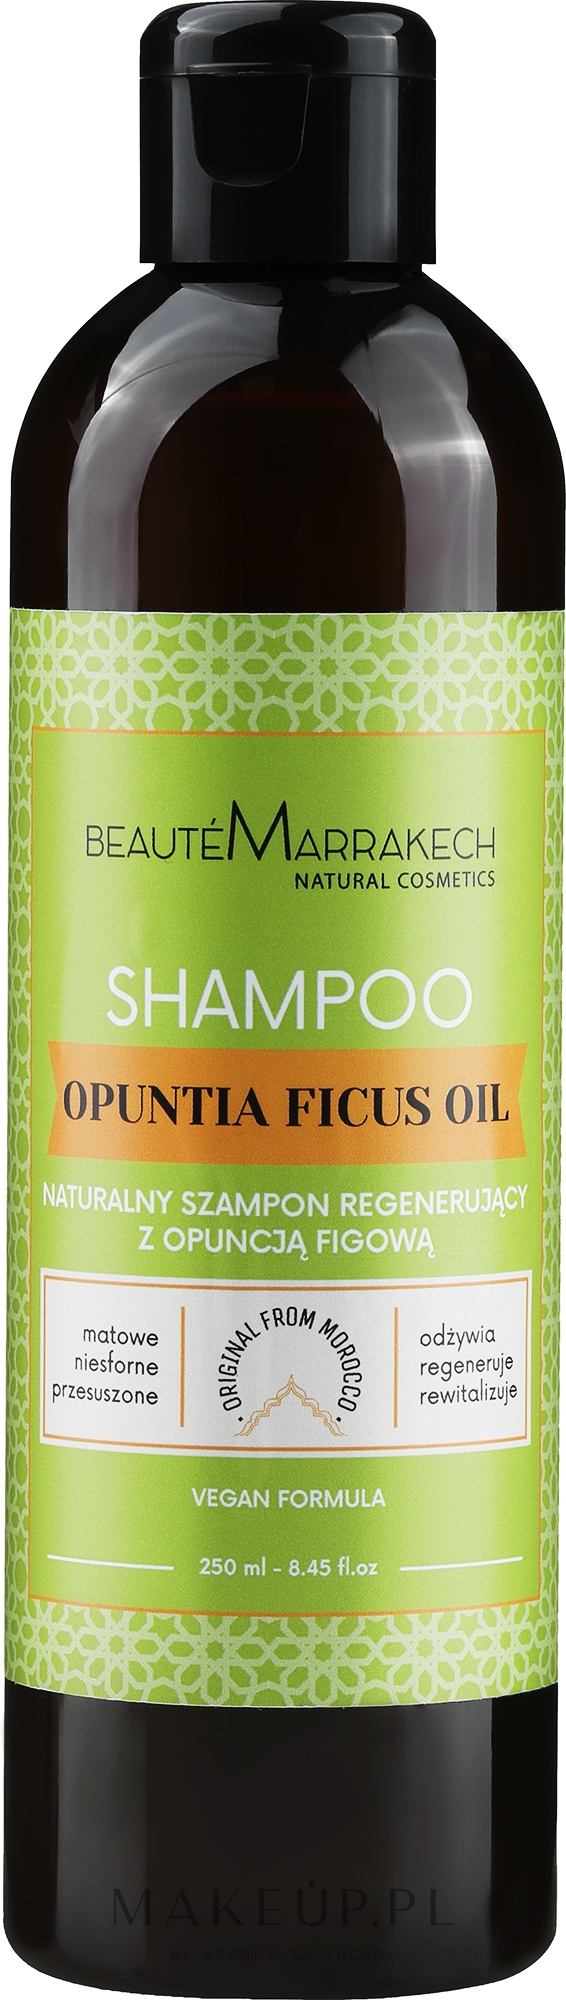 opuntia oil szampon z opuncji figowej cena